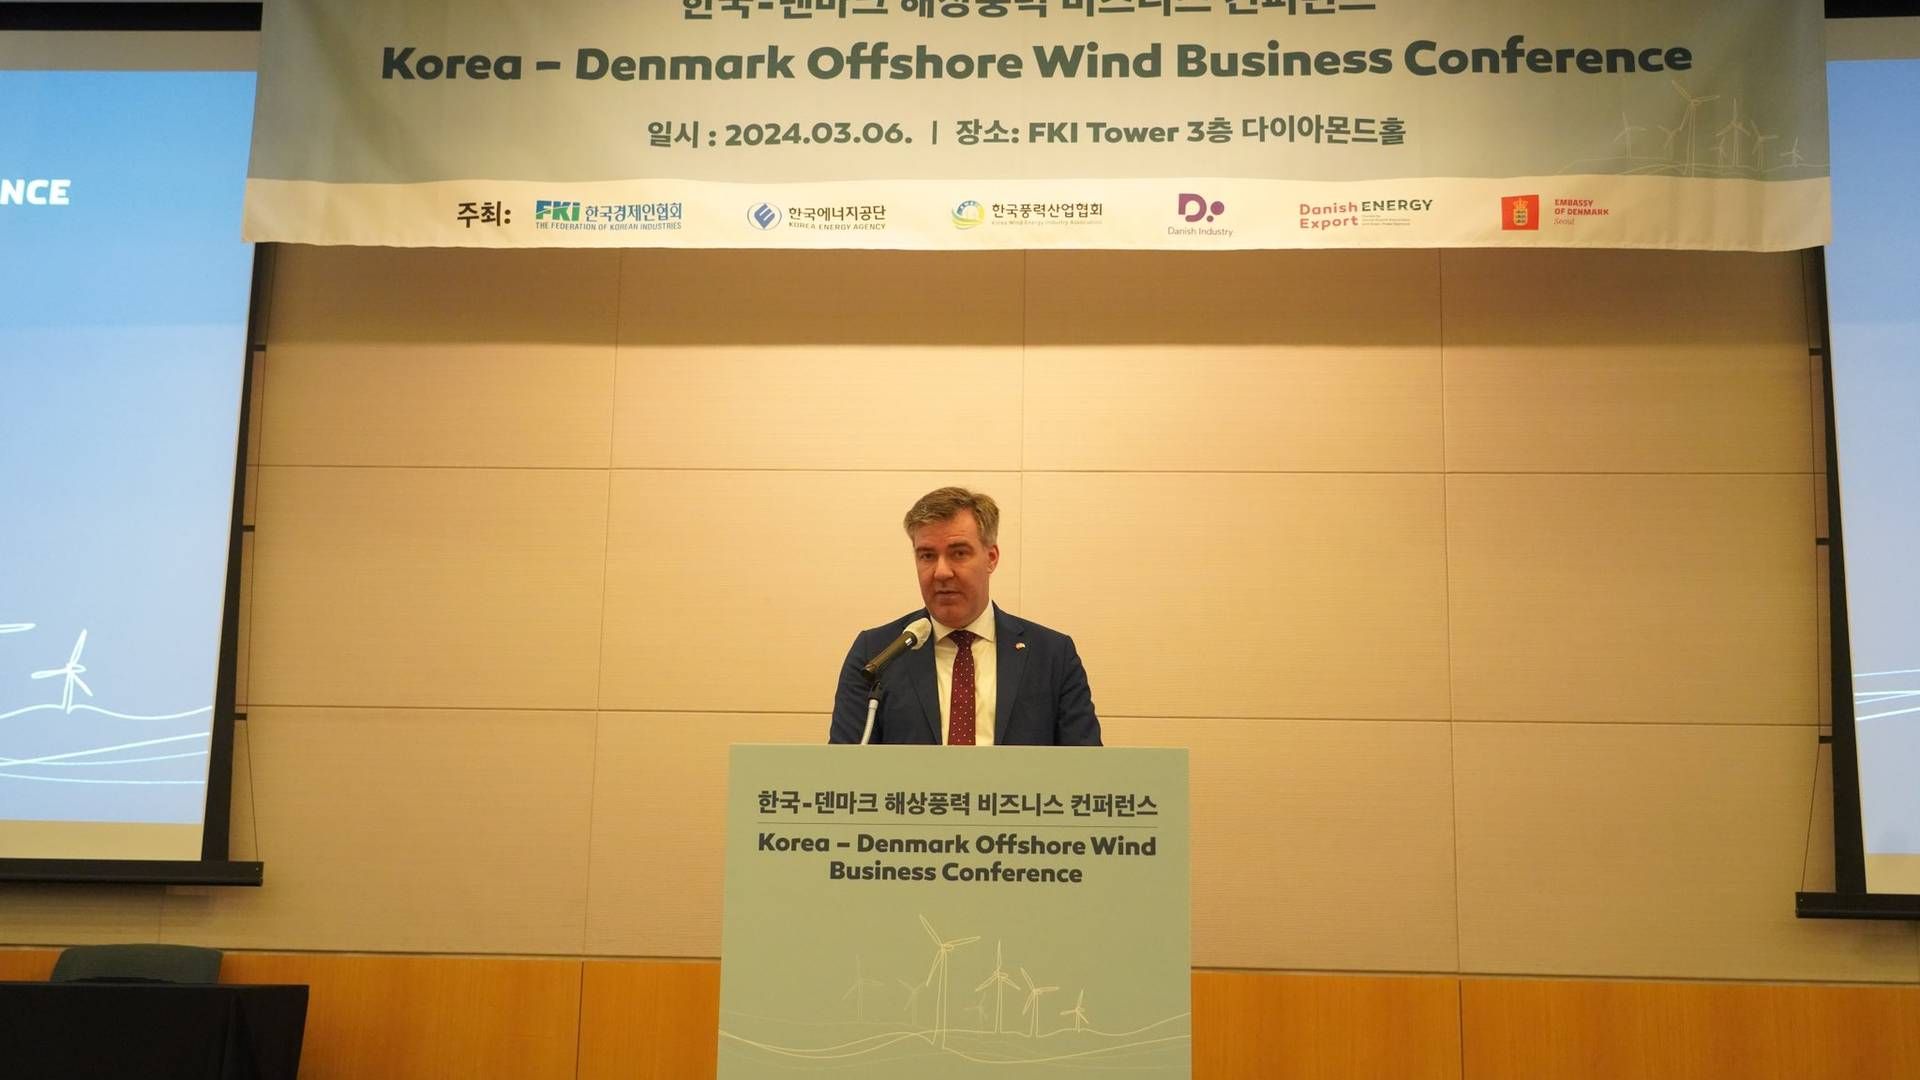 Aftalen mellem CIP og LS Cable kommer i forbindelse med en dansk/koreansk vindkoference, hvor bl.a.. energiminister Lars Aagaard deltager. | Foto: Kefm